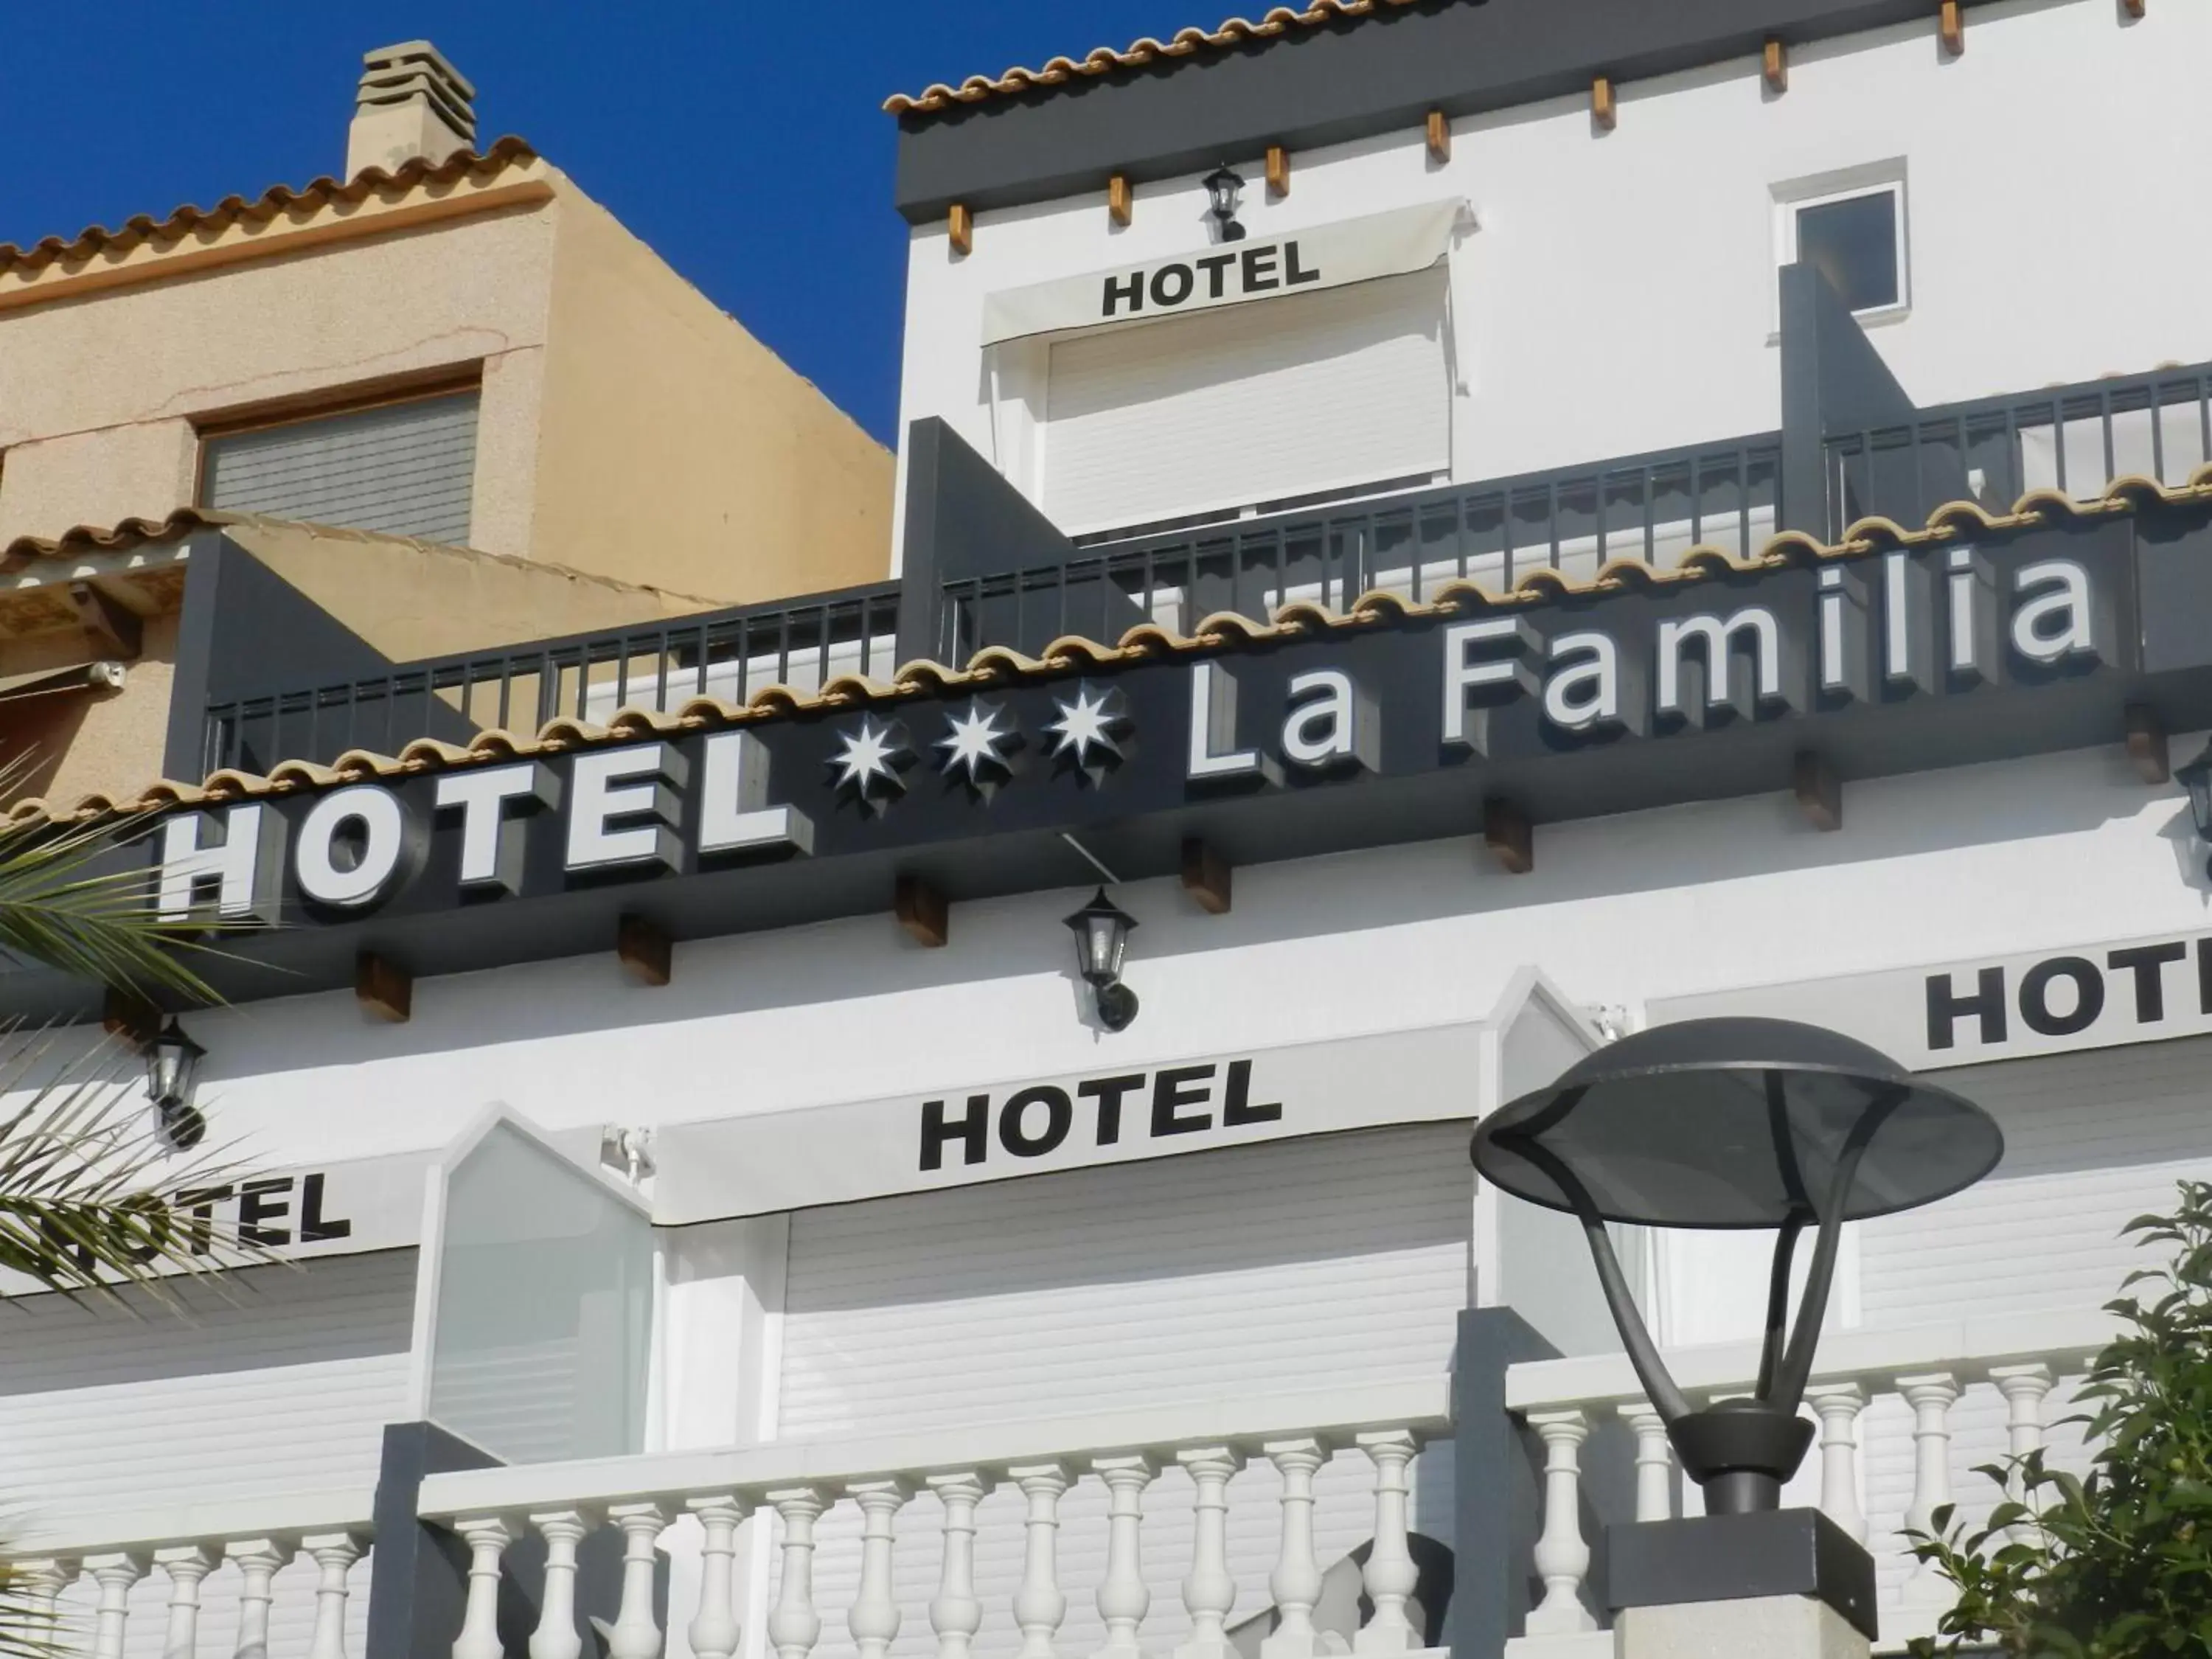 Facade/entrance, Property Building in Hotel La Familia